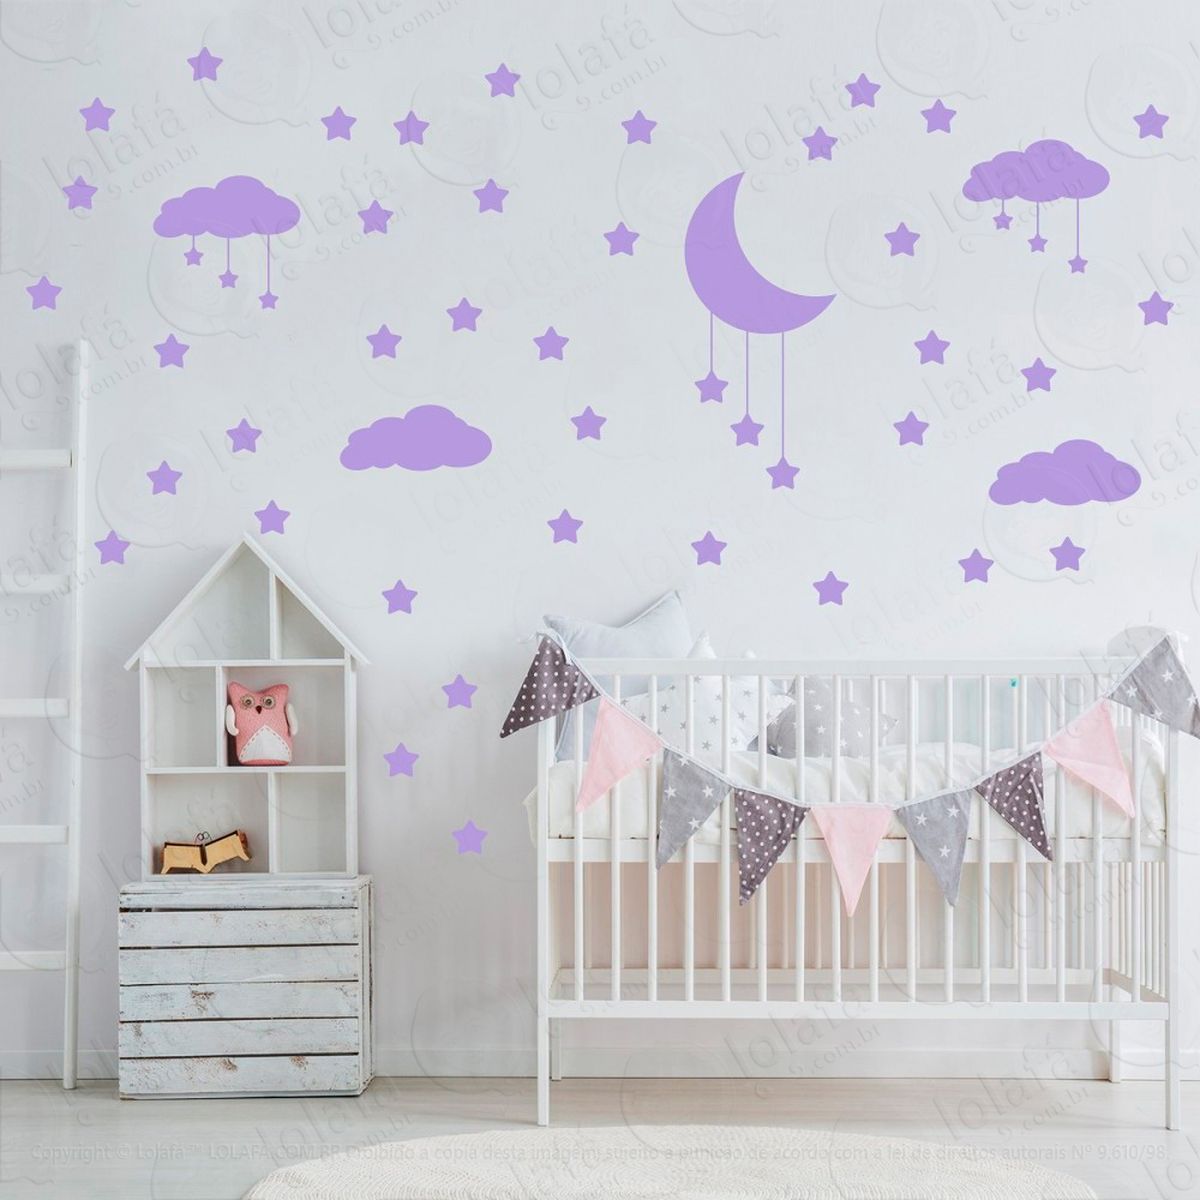 adesivos nuvens estrelas e lua 60 peças adesivos para quarto de bebê infantil - mod:745